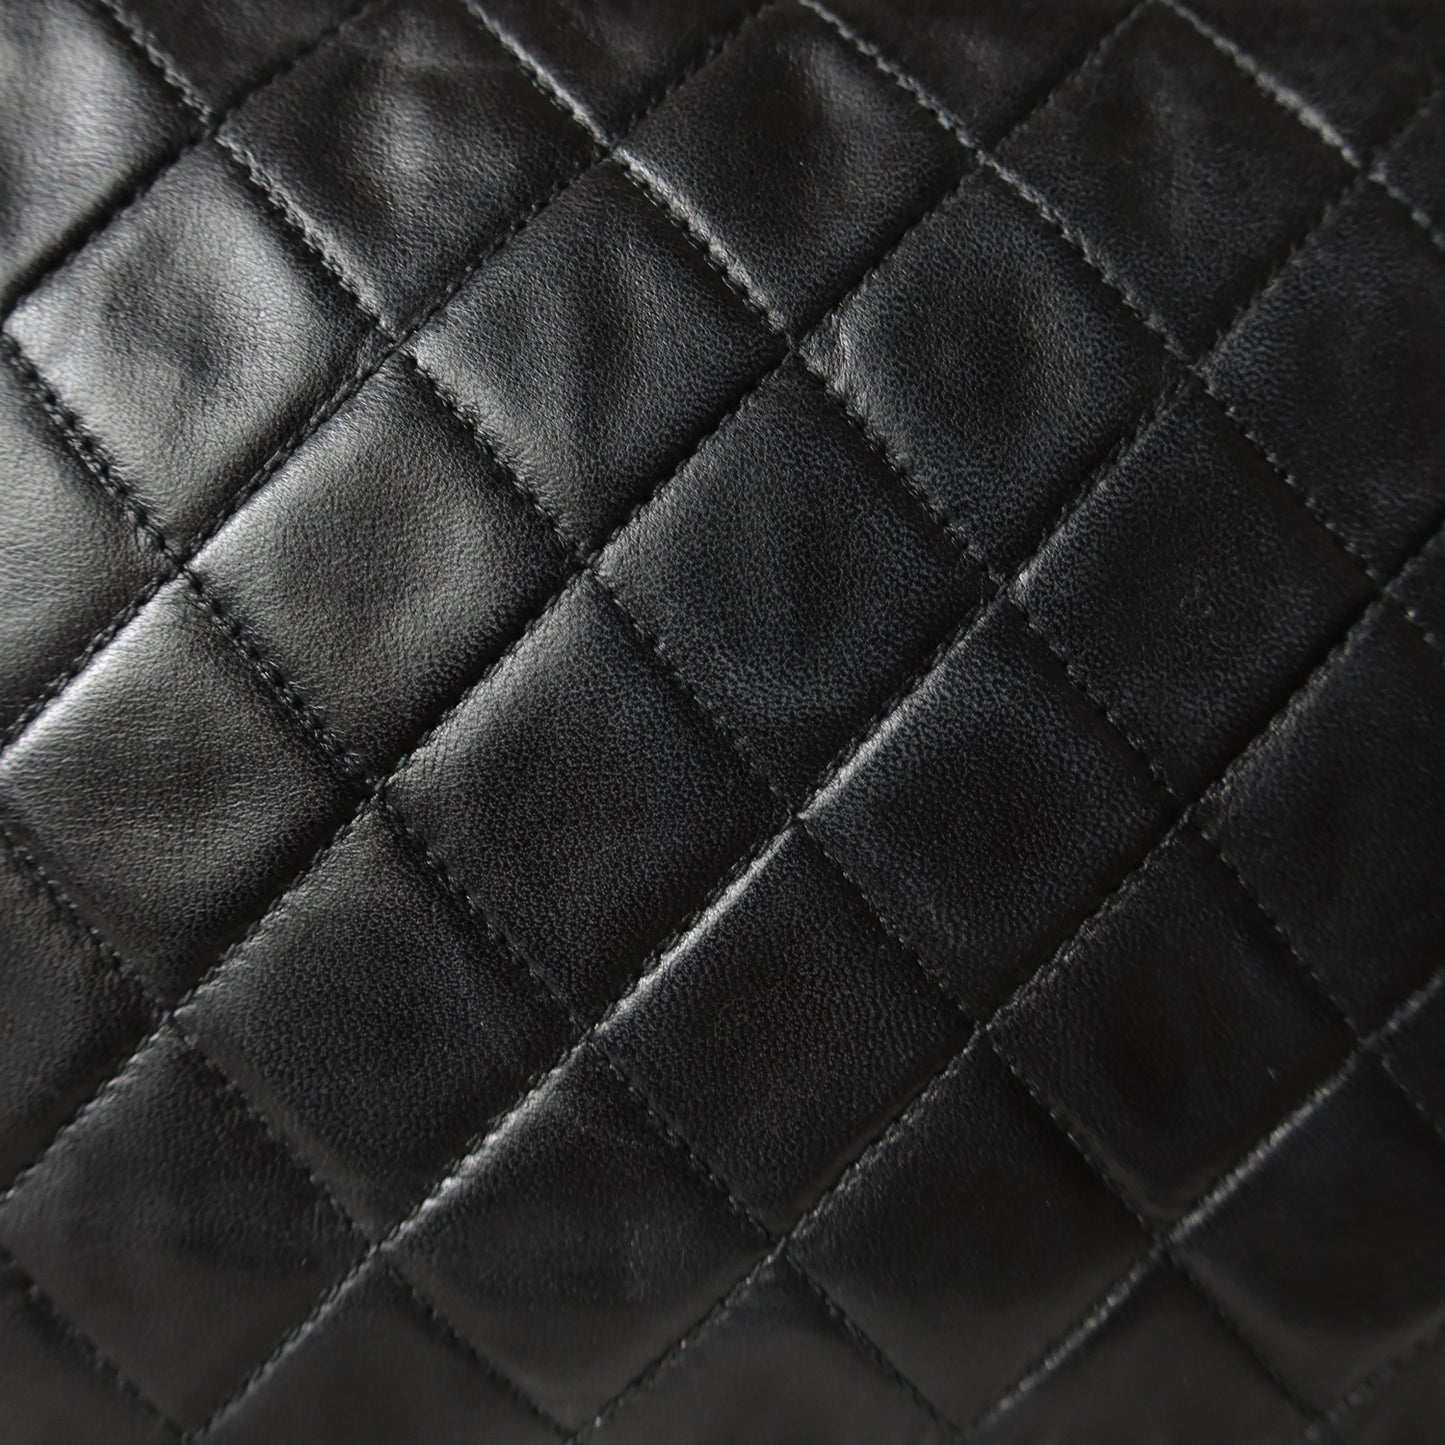 Chanel Vintage Black Lambskin Tassel Asymmetrical Double Flap Bag